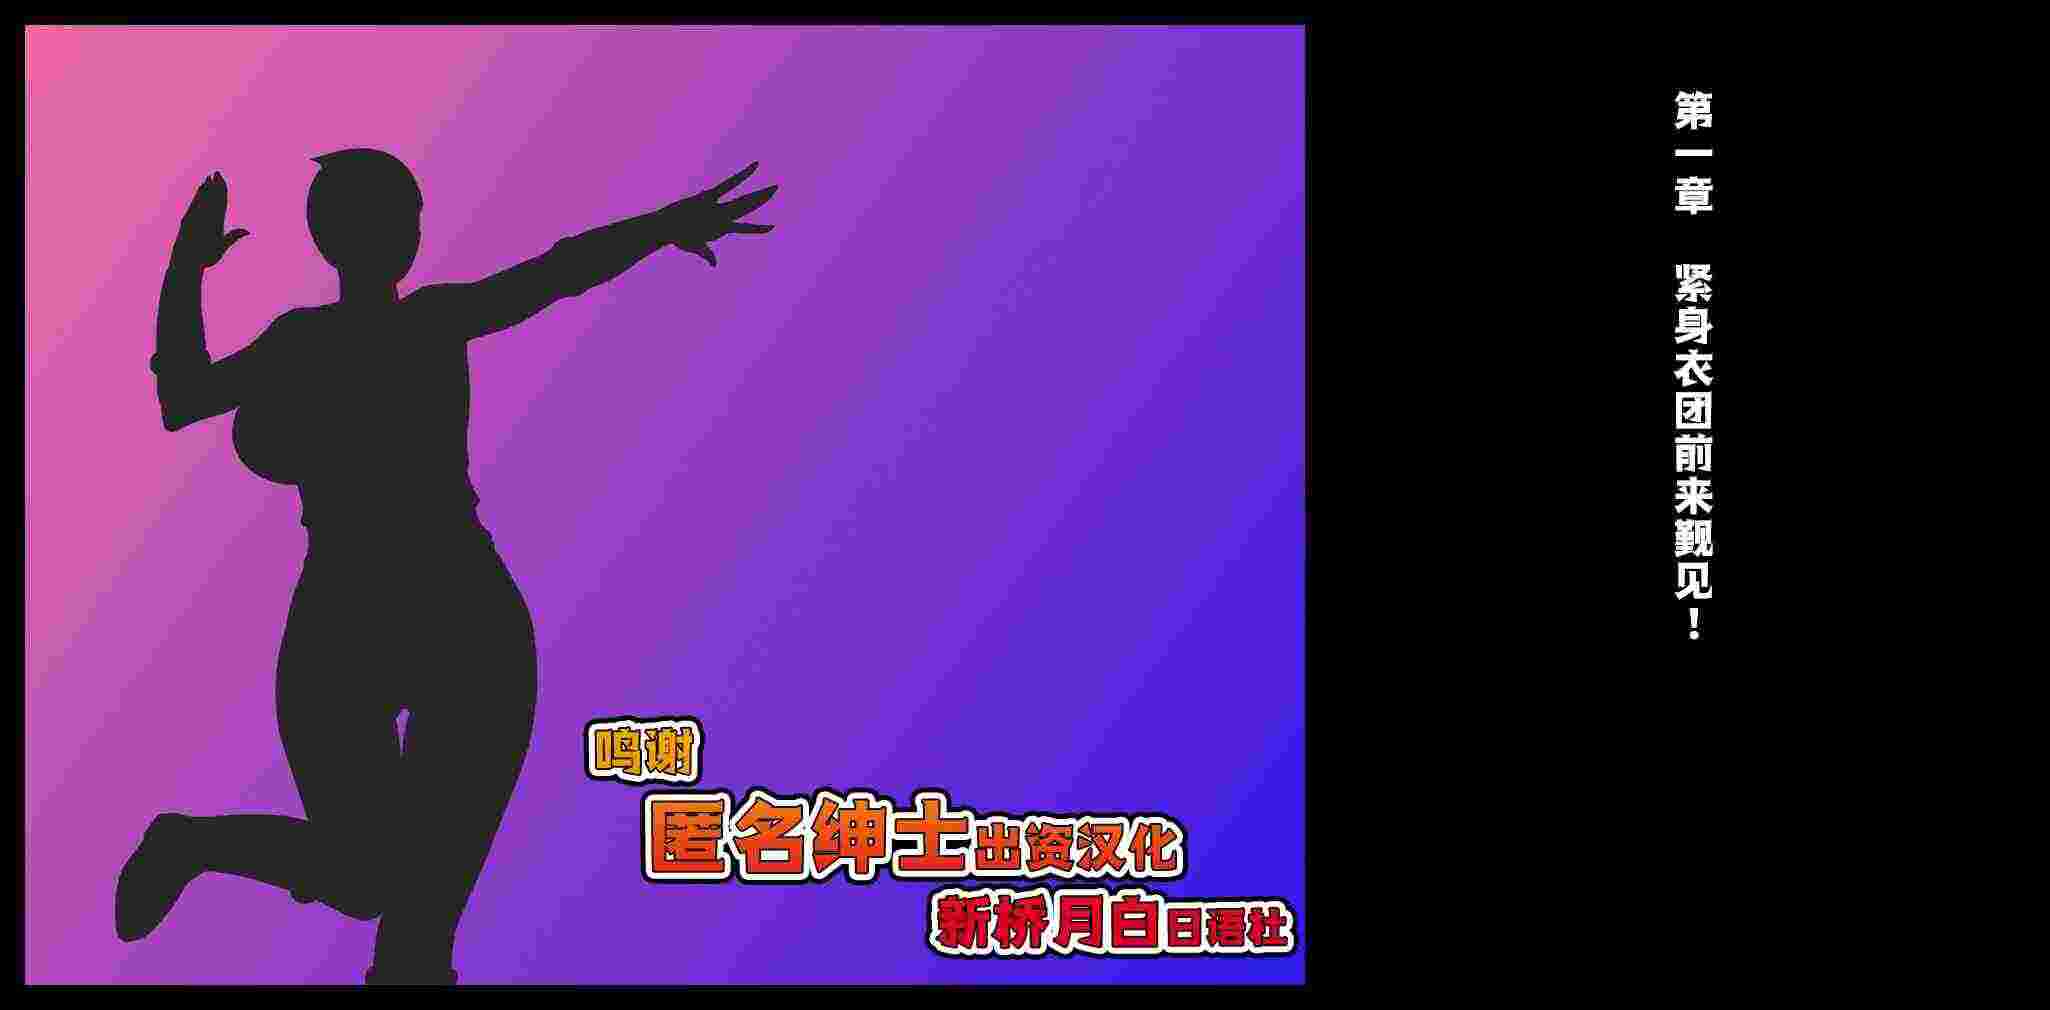 火影忍者漫画版[コノシロしんこ (山雀たすく、烏丸やよい)] 無知☆あね